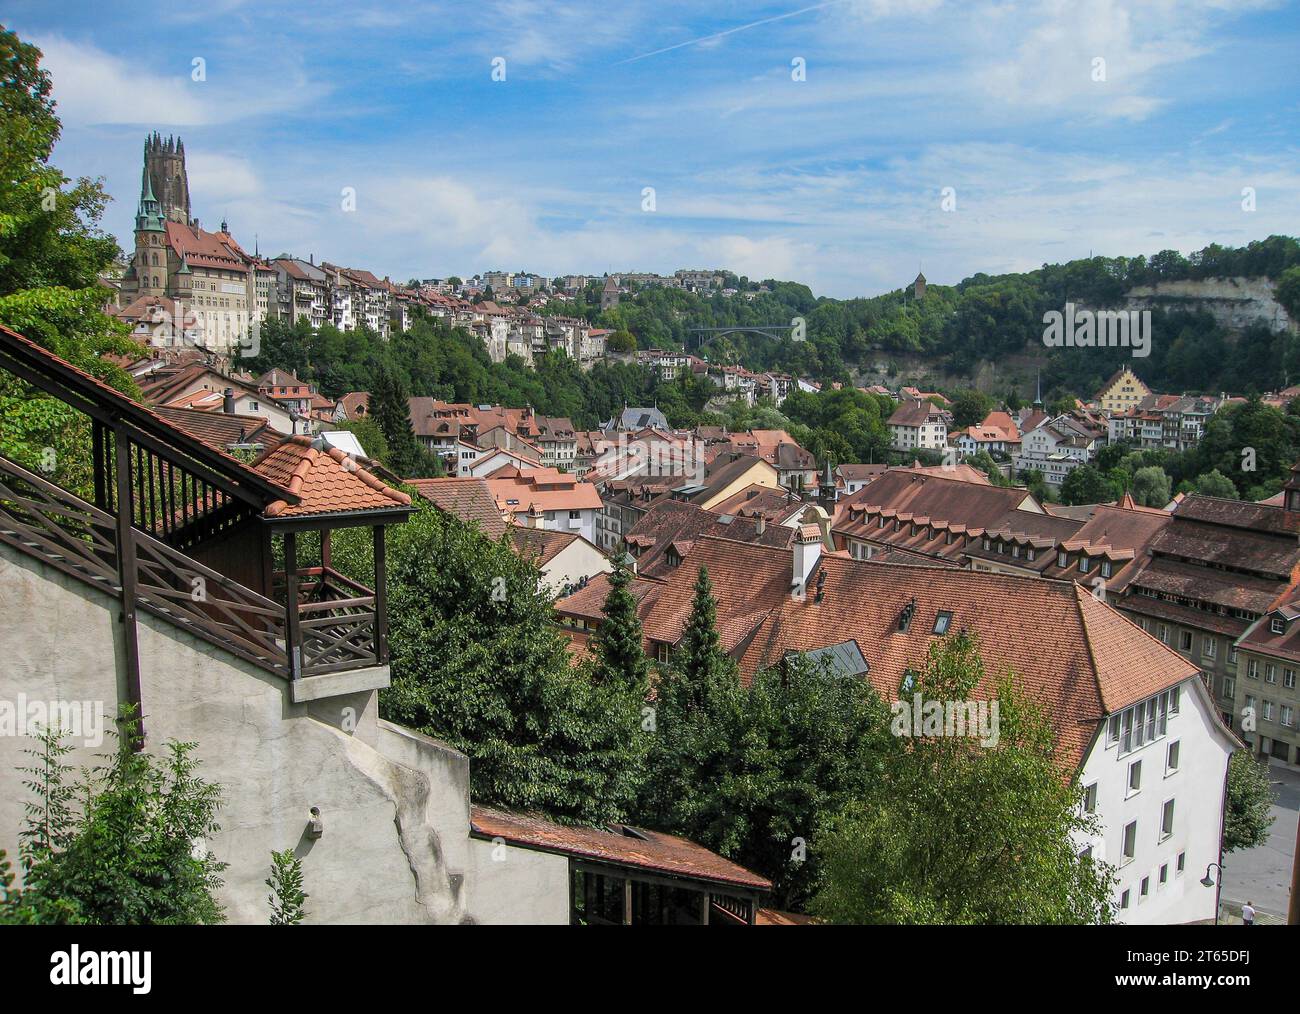 Friburgo con su casco antiguo medieval. En primer plano el funicular. Suiza Stock Photo